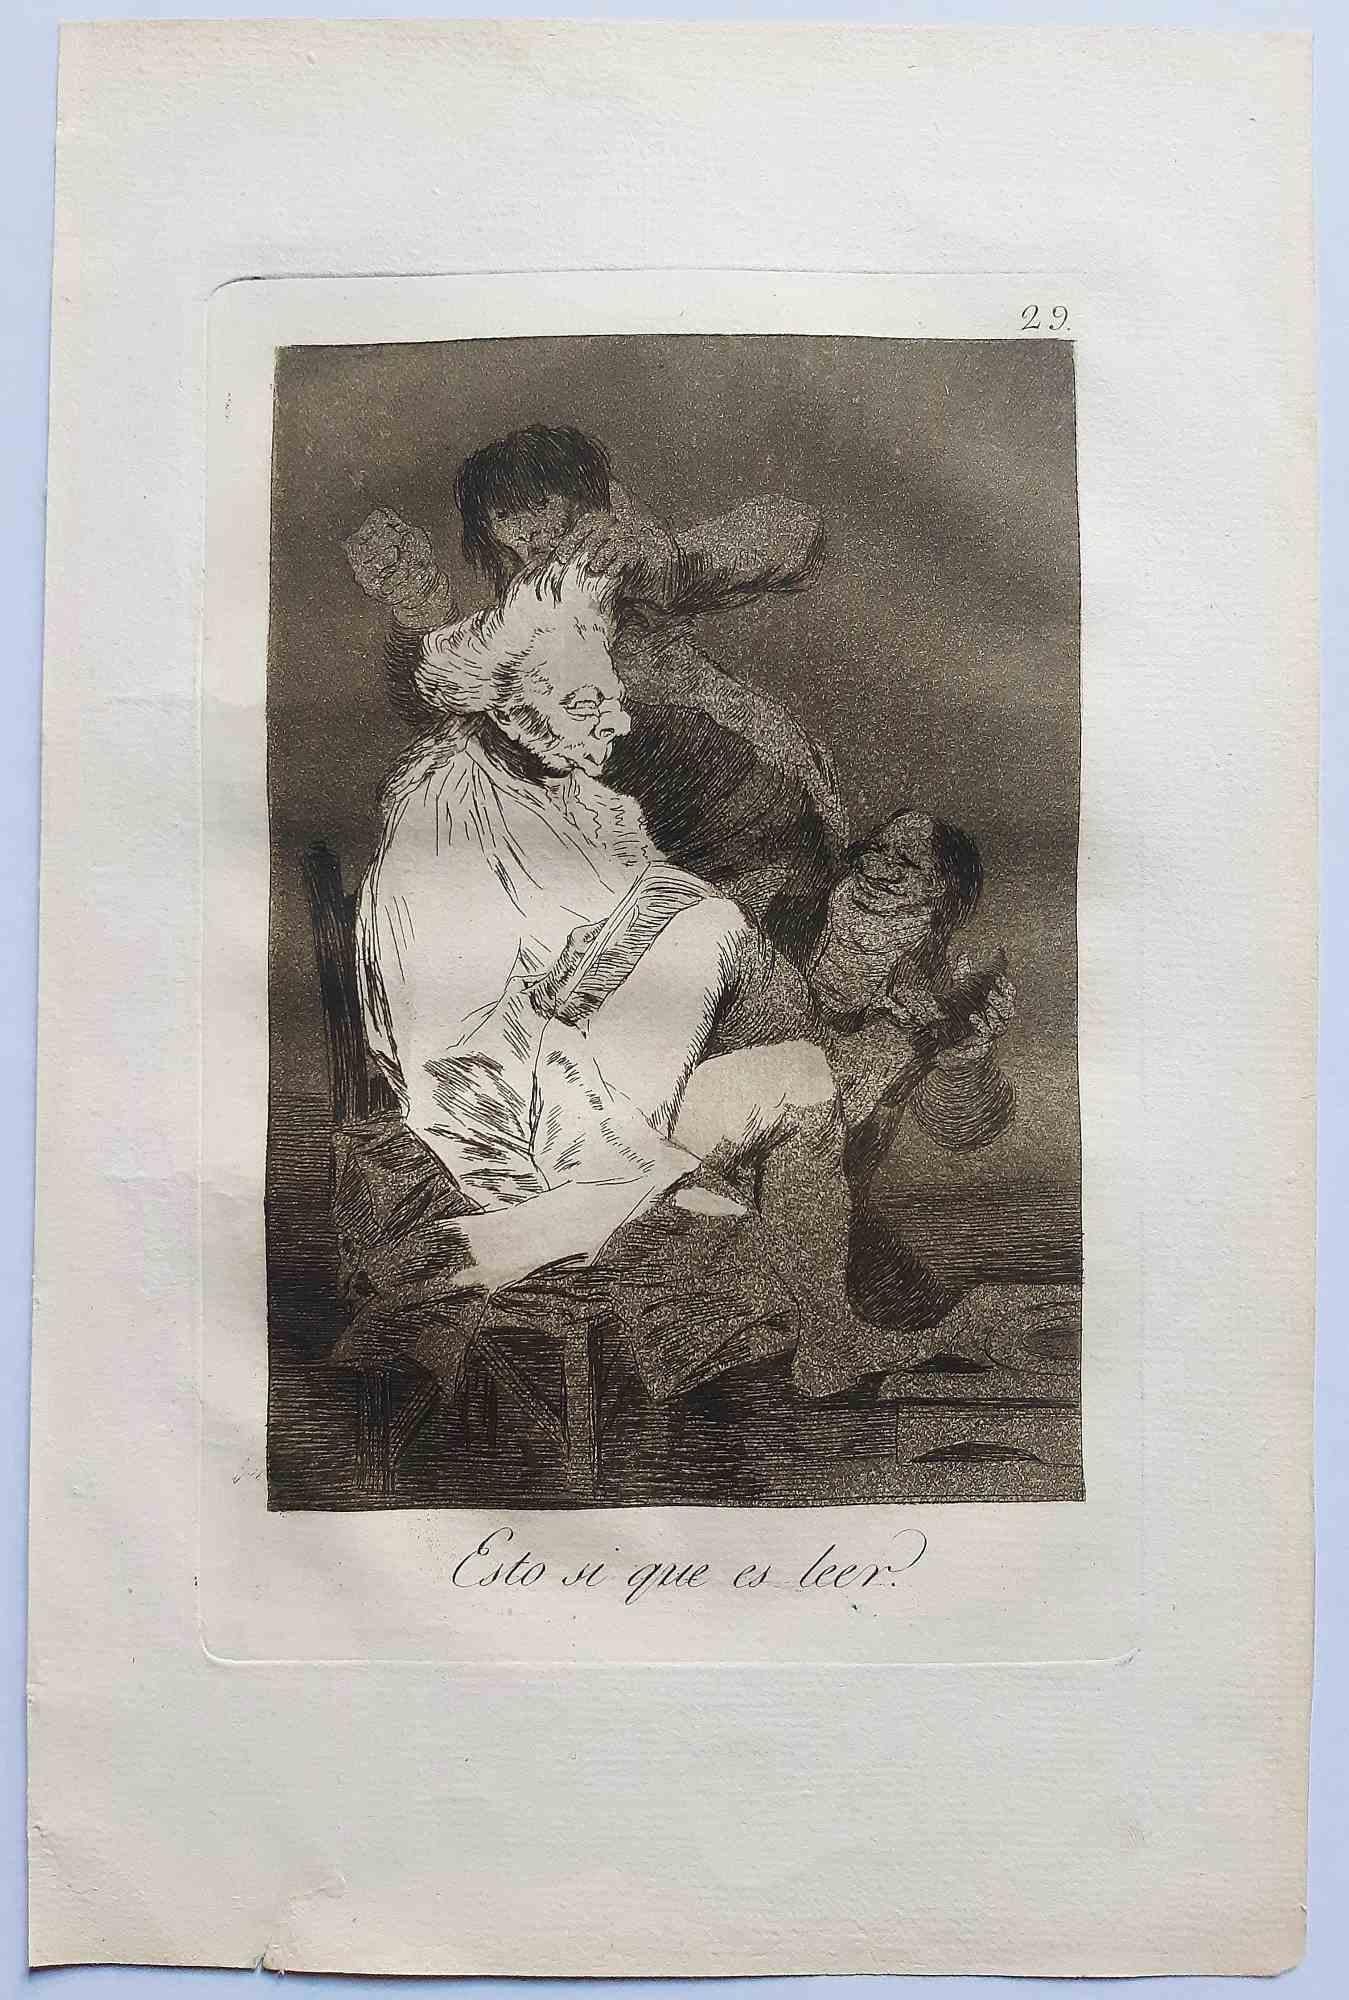 Esto si que es léer est une œuvre originale réalisée par l'artiste Francisco Goya et publiée pour la première fois en 1799.

Gravure sur papier.

Cette gravure fait partie de la première édition de "Los Caprichos" publiée en 1799 par la Calcografia